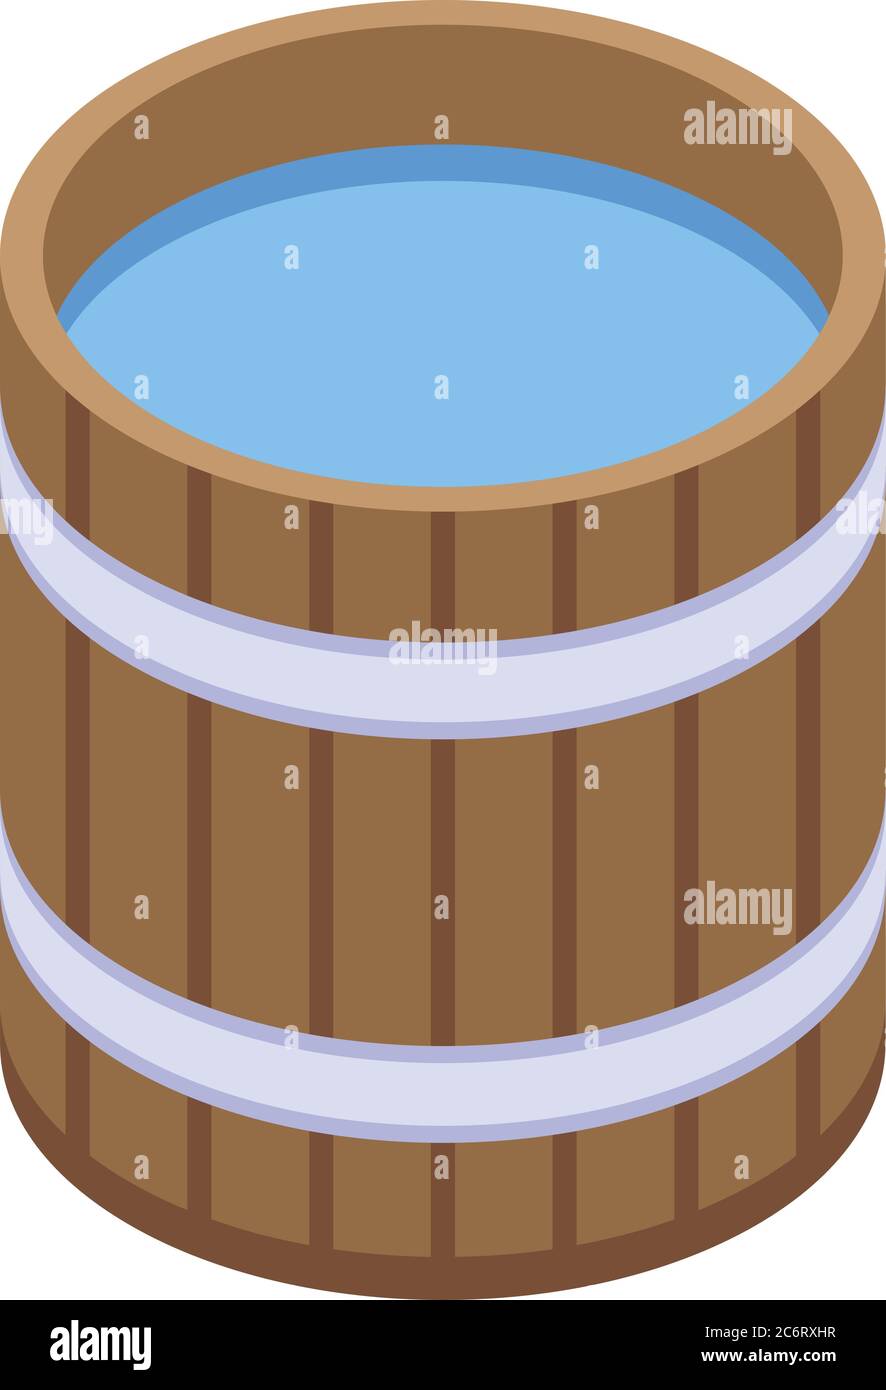 Sauna water bucket icon, isometric style Stock Vector